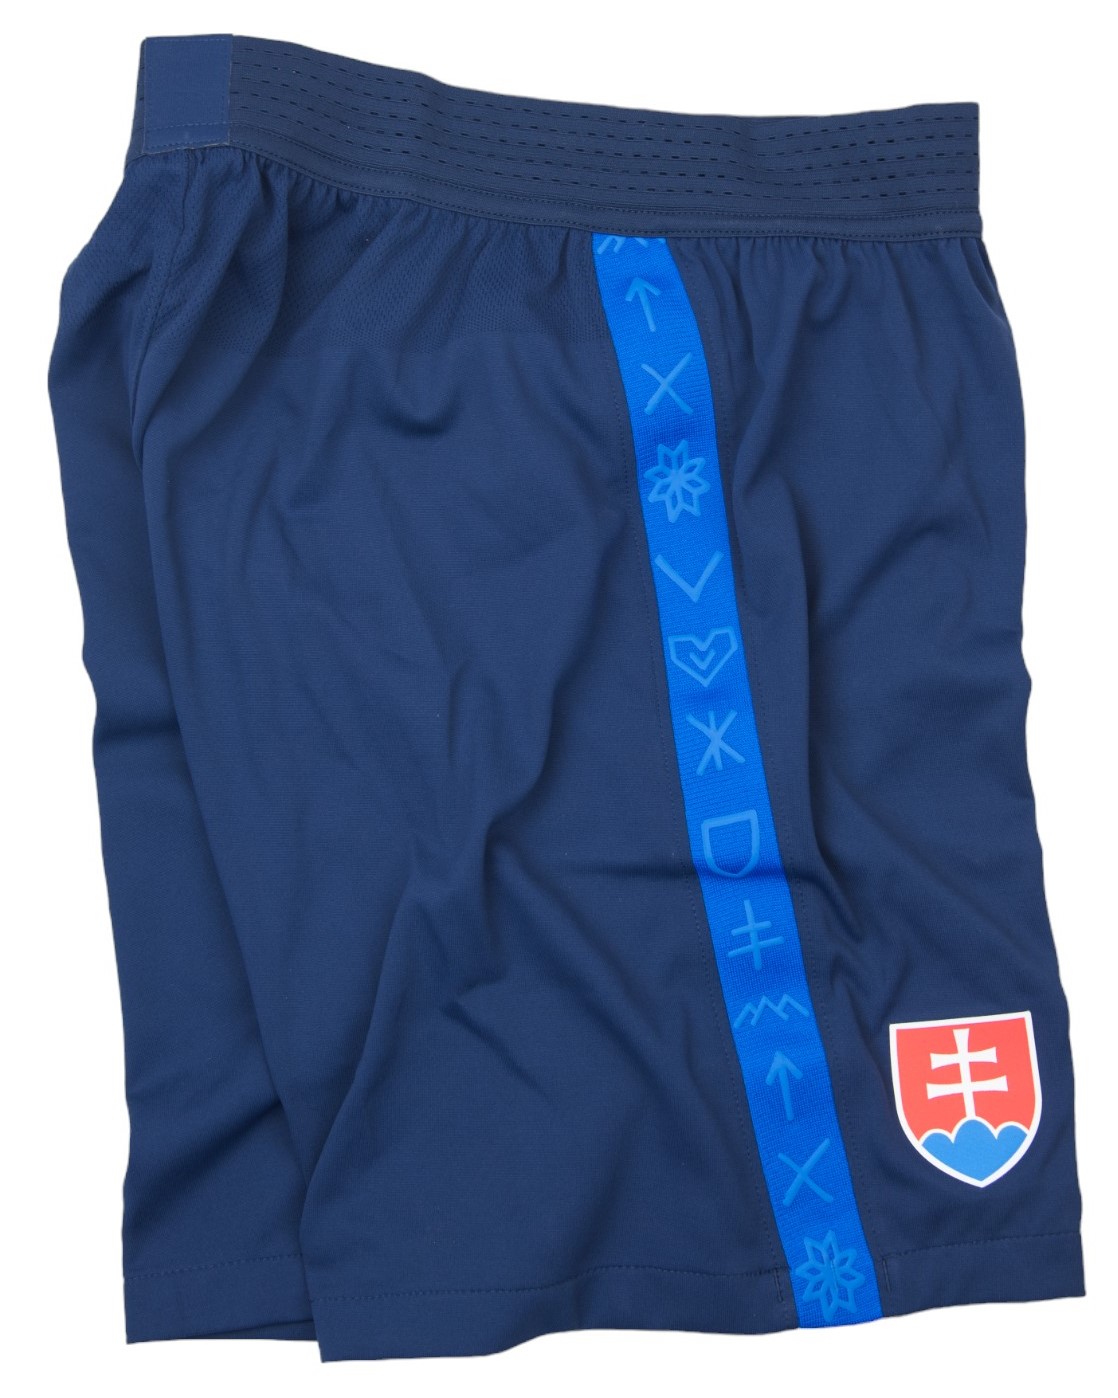 Pánské fotbalové šortky Nike Dri-FIT Slovensko, domácí/hostující